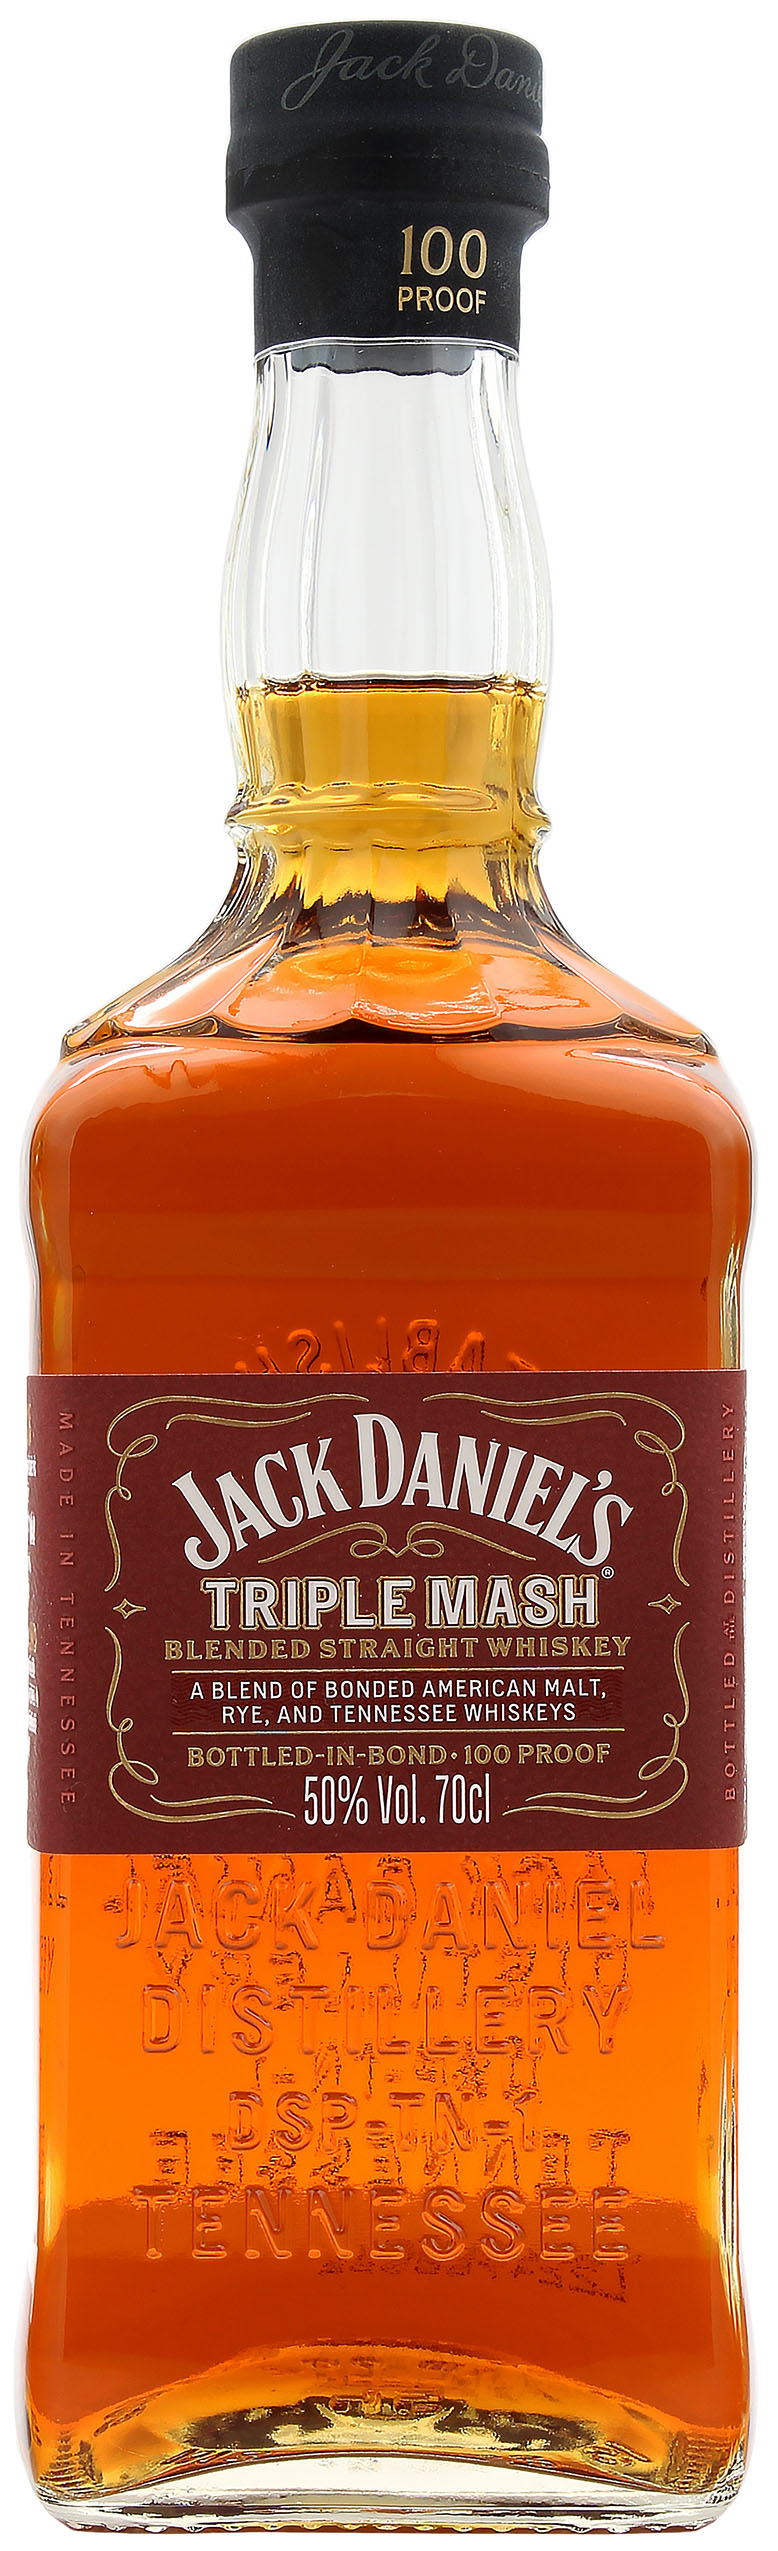 Jack Daniel's Triple Mash Blended Straight Whiskey 50.0% 0,7l